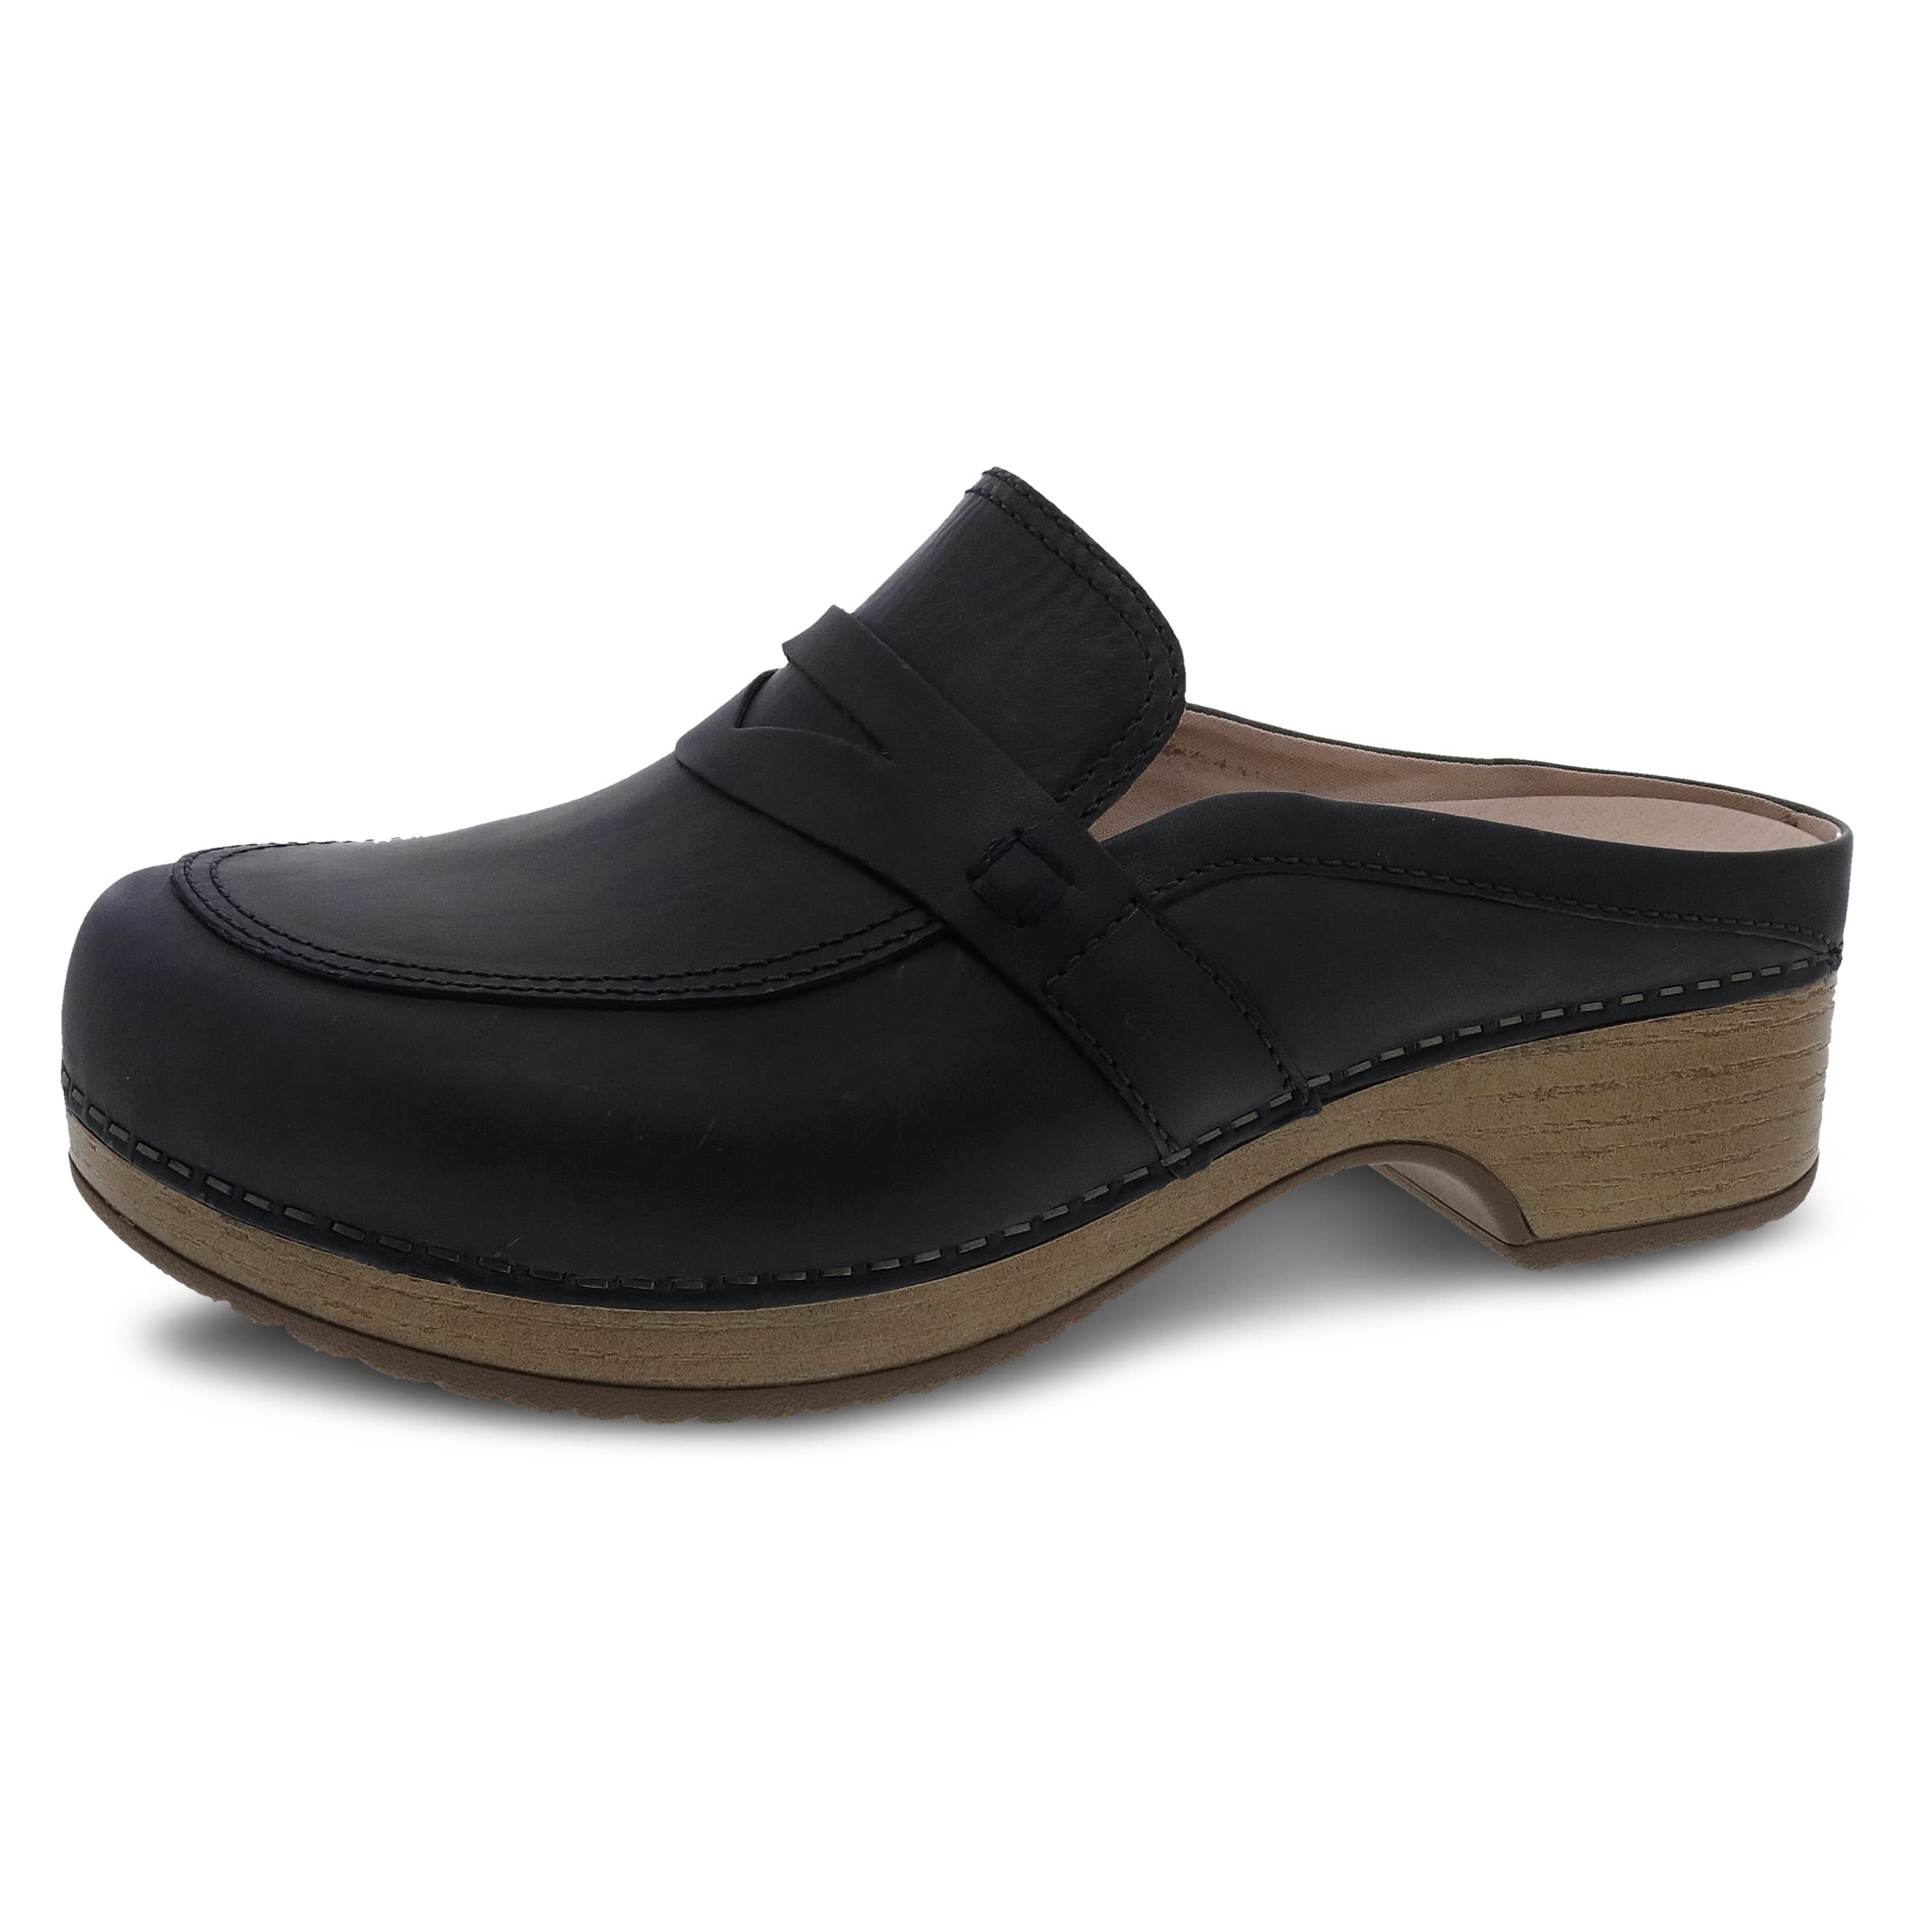 Dansko Women's Bel Mule - Comfort Loafer